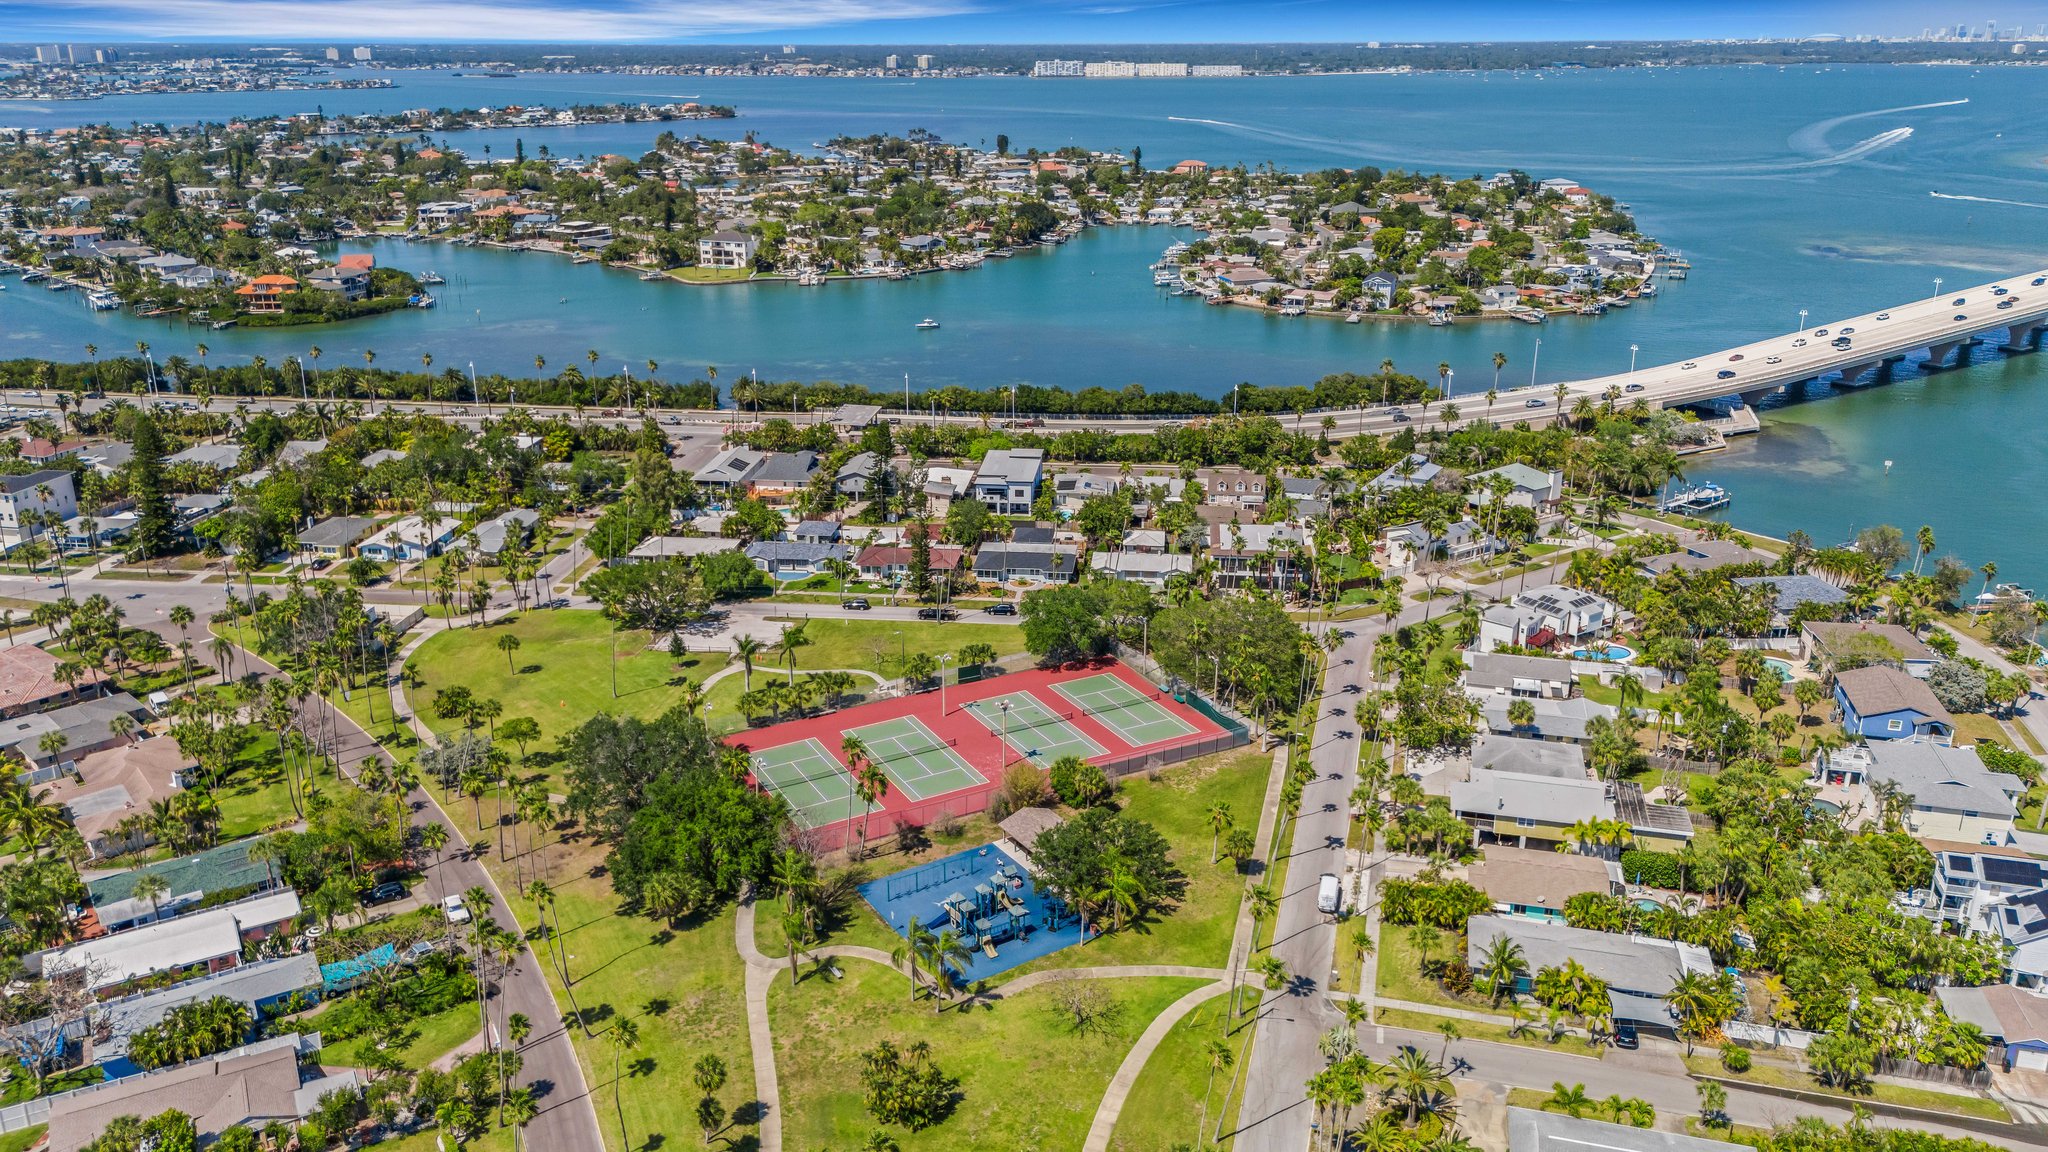 Aerial View of Neighborhood, Park, Intra Coastal Waterways and Bay Way Bridge